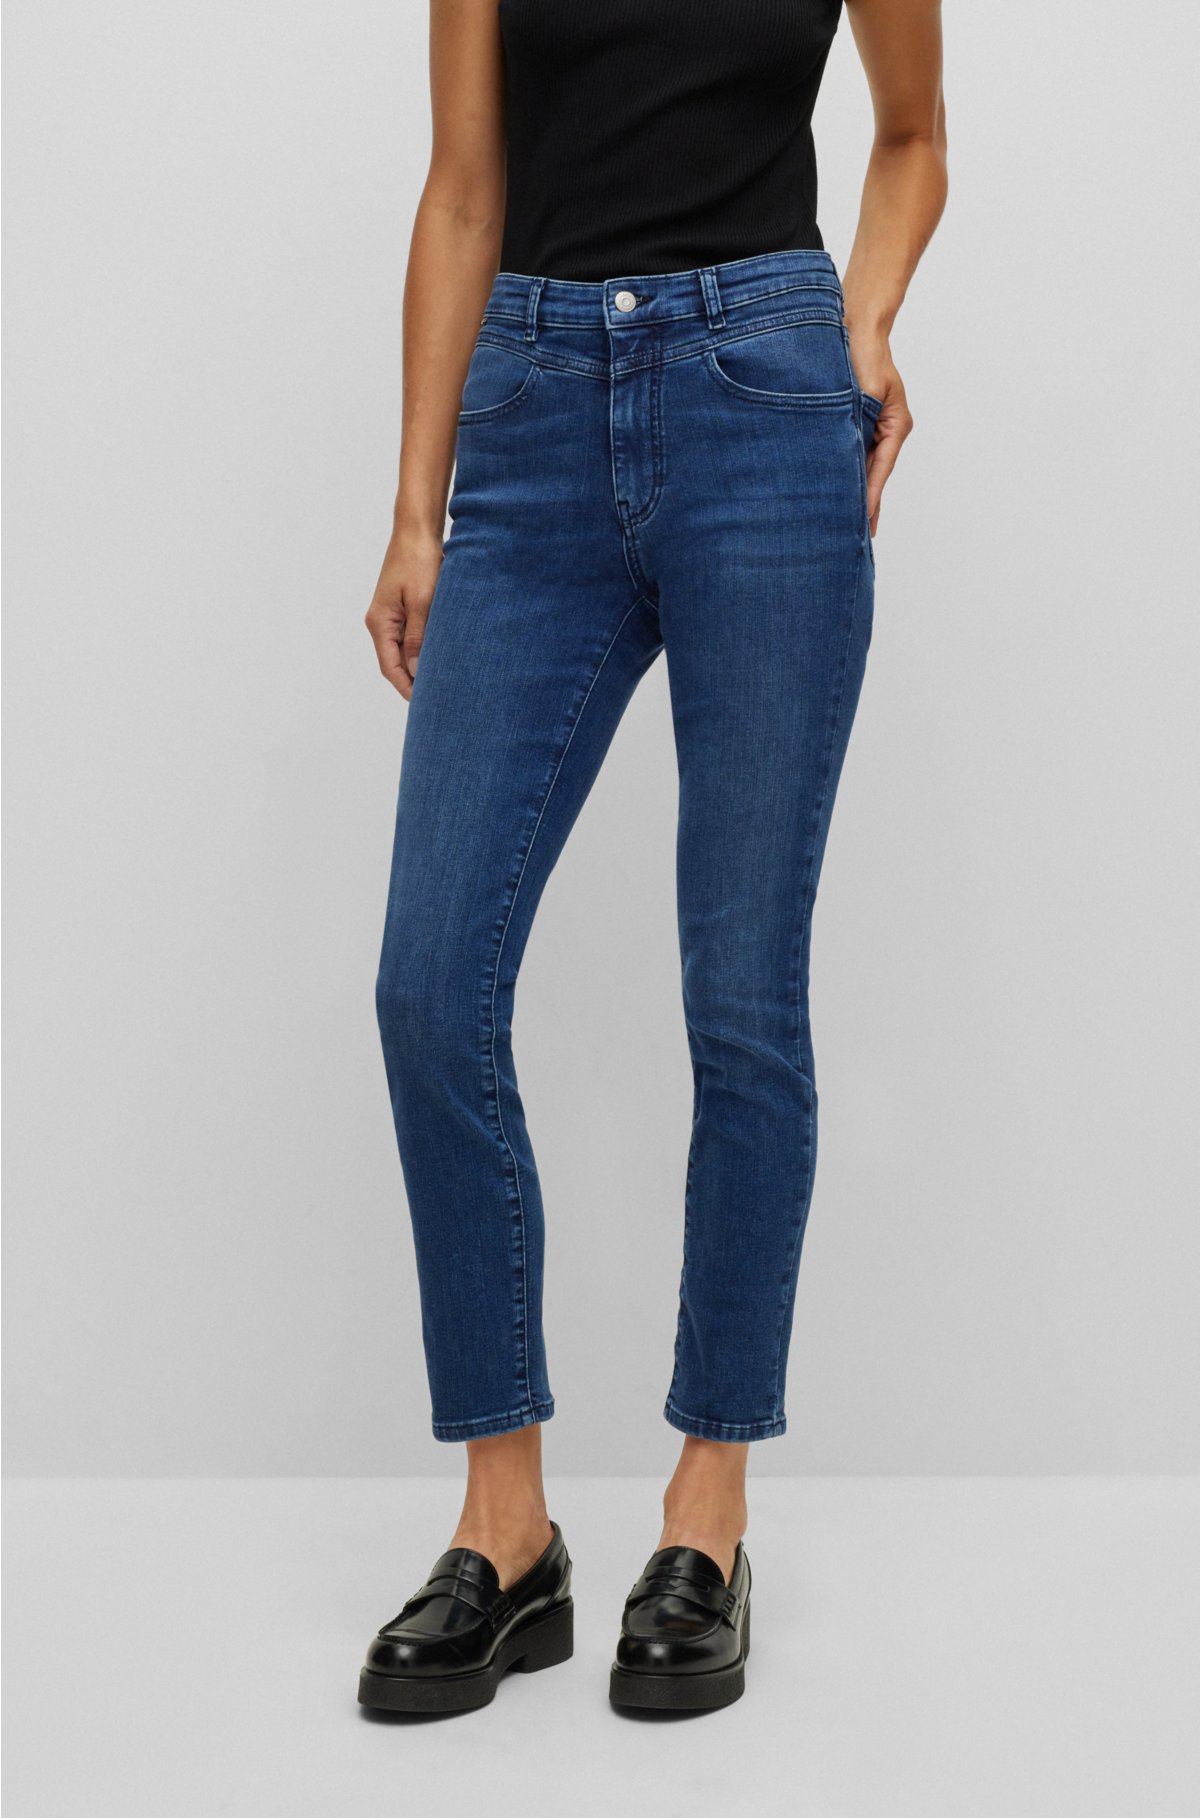 BOSS - Skinny-fit jeans in blue super-stretch denim